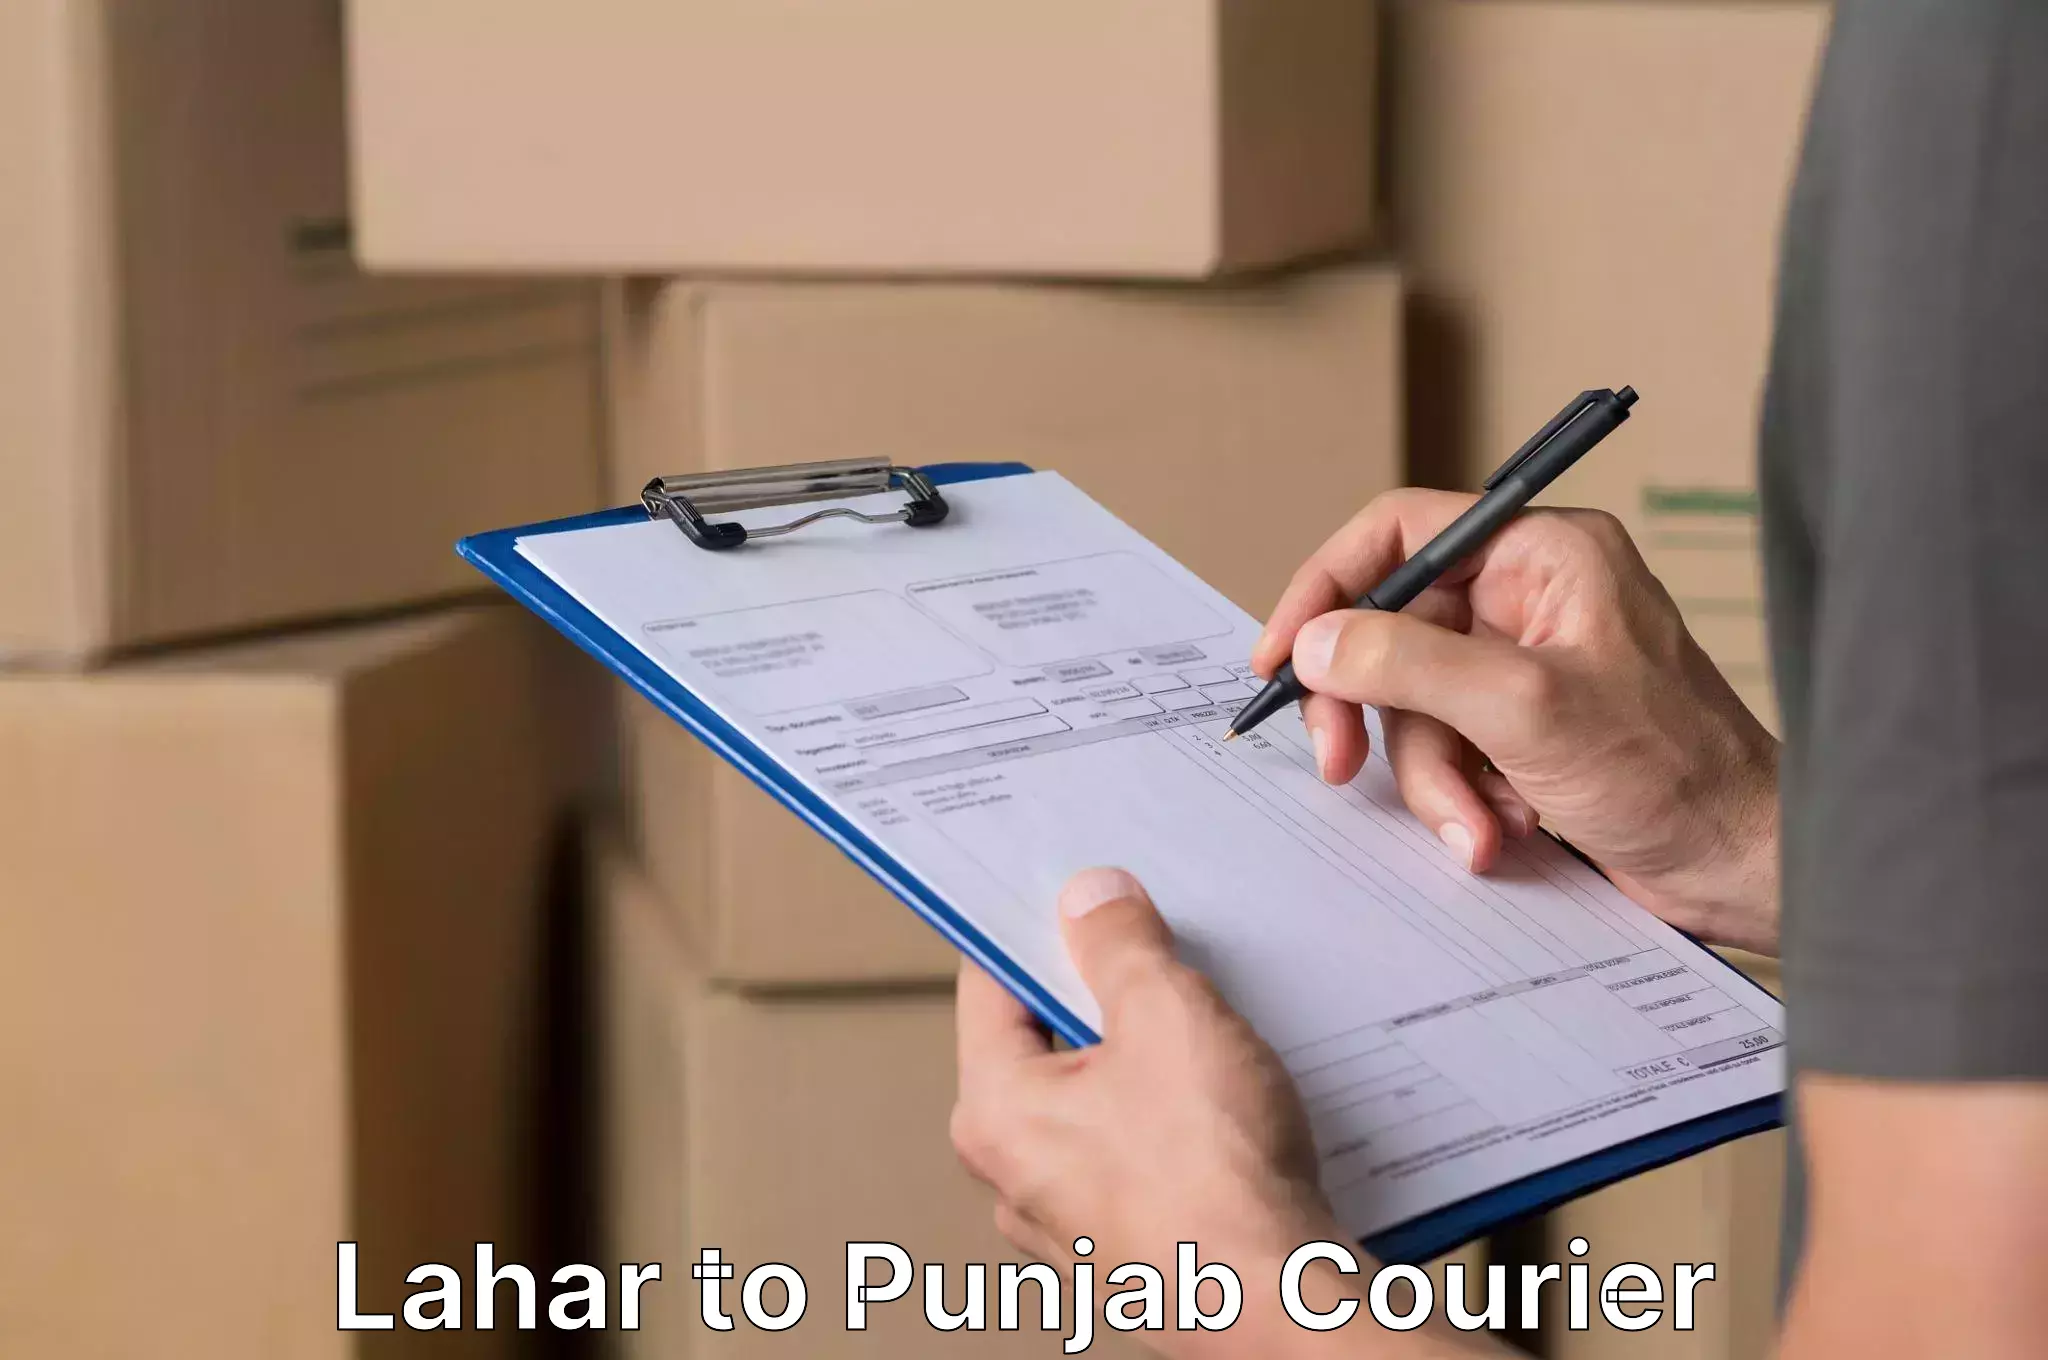 Furniture moving experts Lahar to Punjab